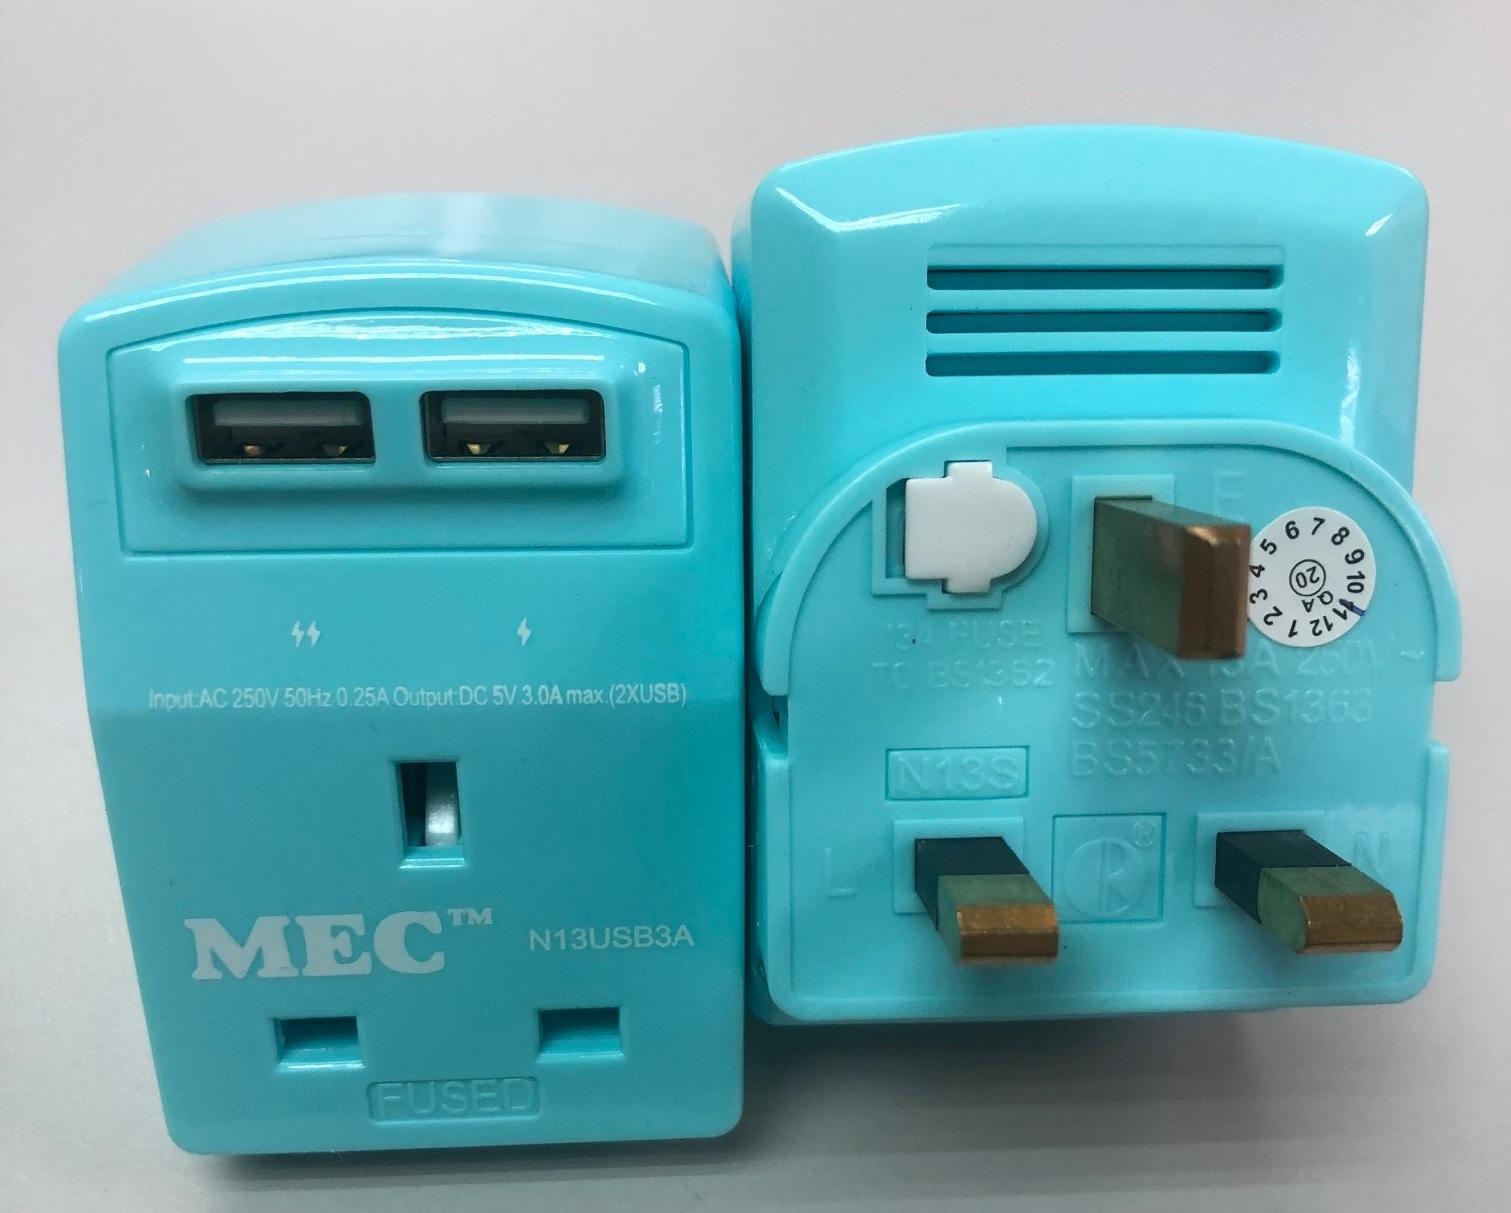 機電工程署今日（五月十三日）呼籲市民停用「MEC」牌一款型號為N13USB3A的適配接頭。圖示該款藍色適配接頭及產品標示。